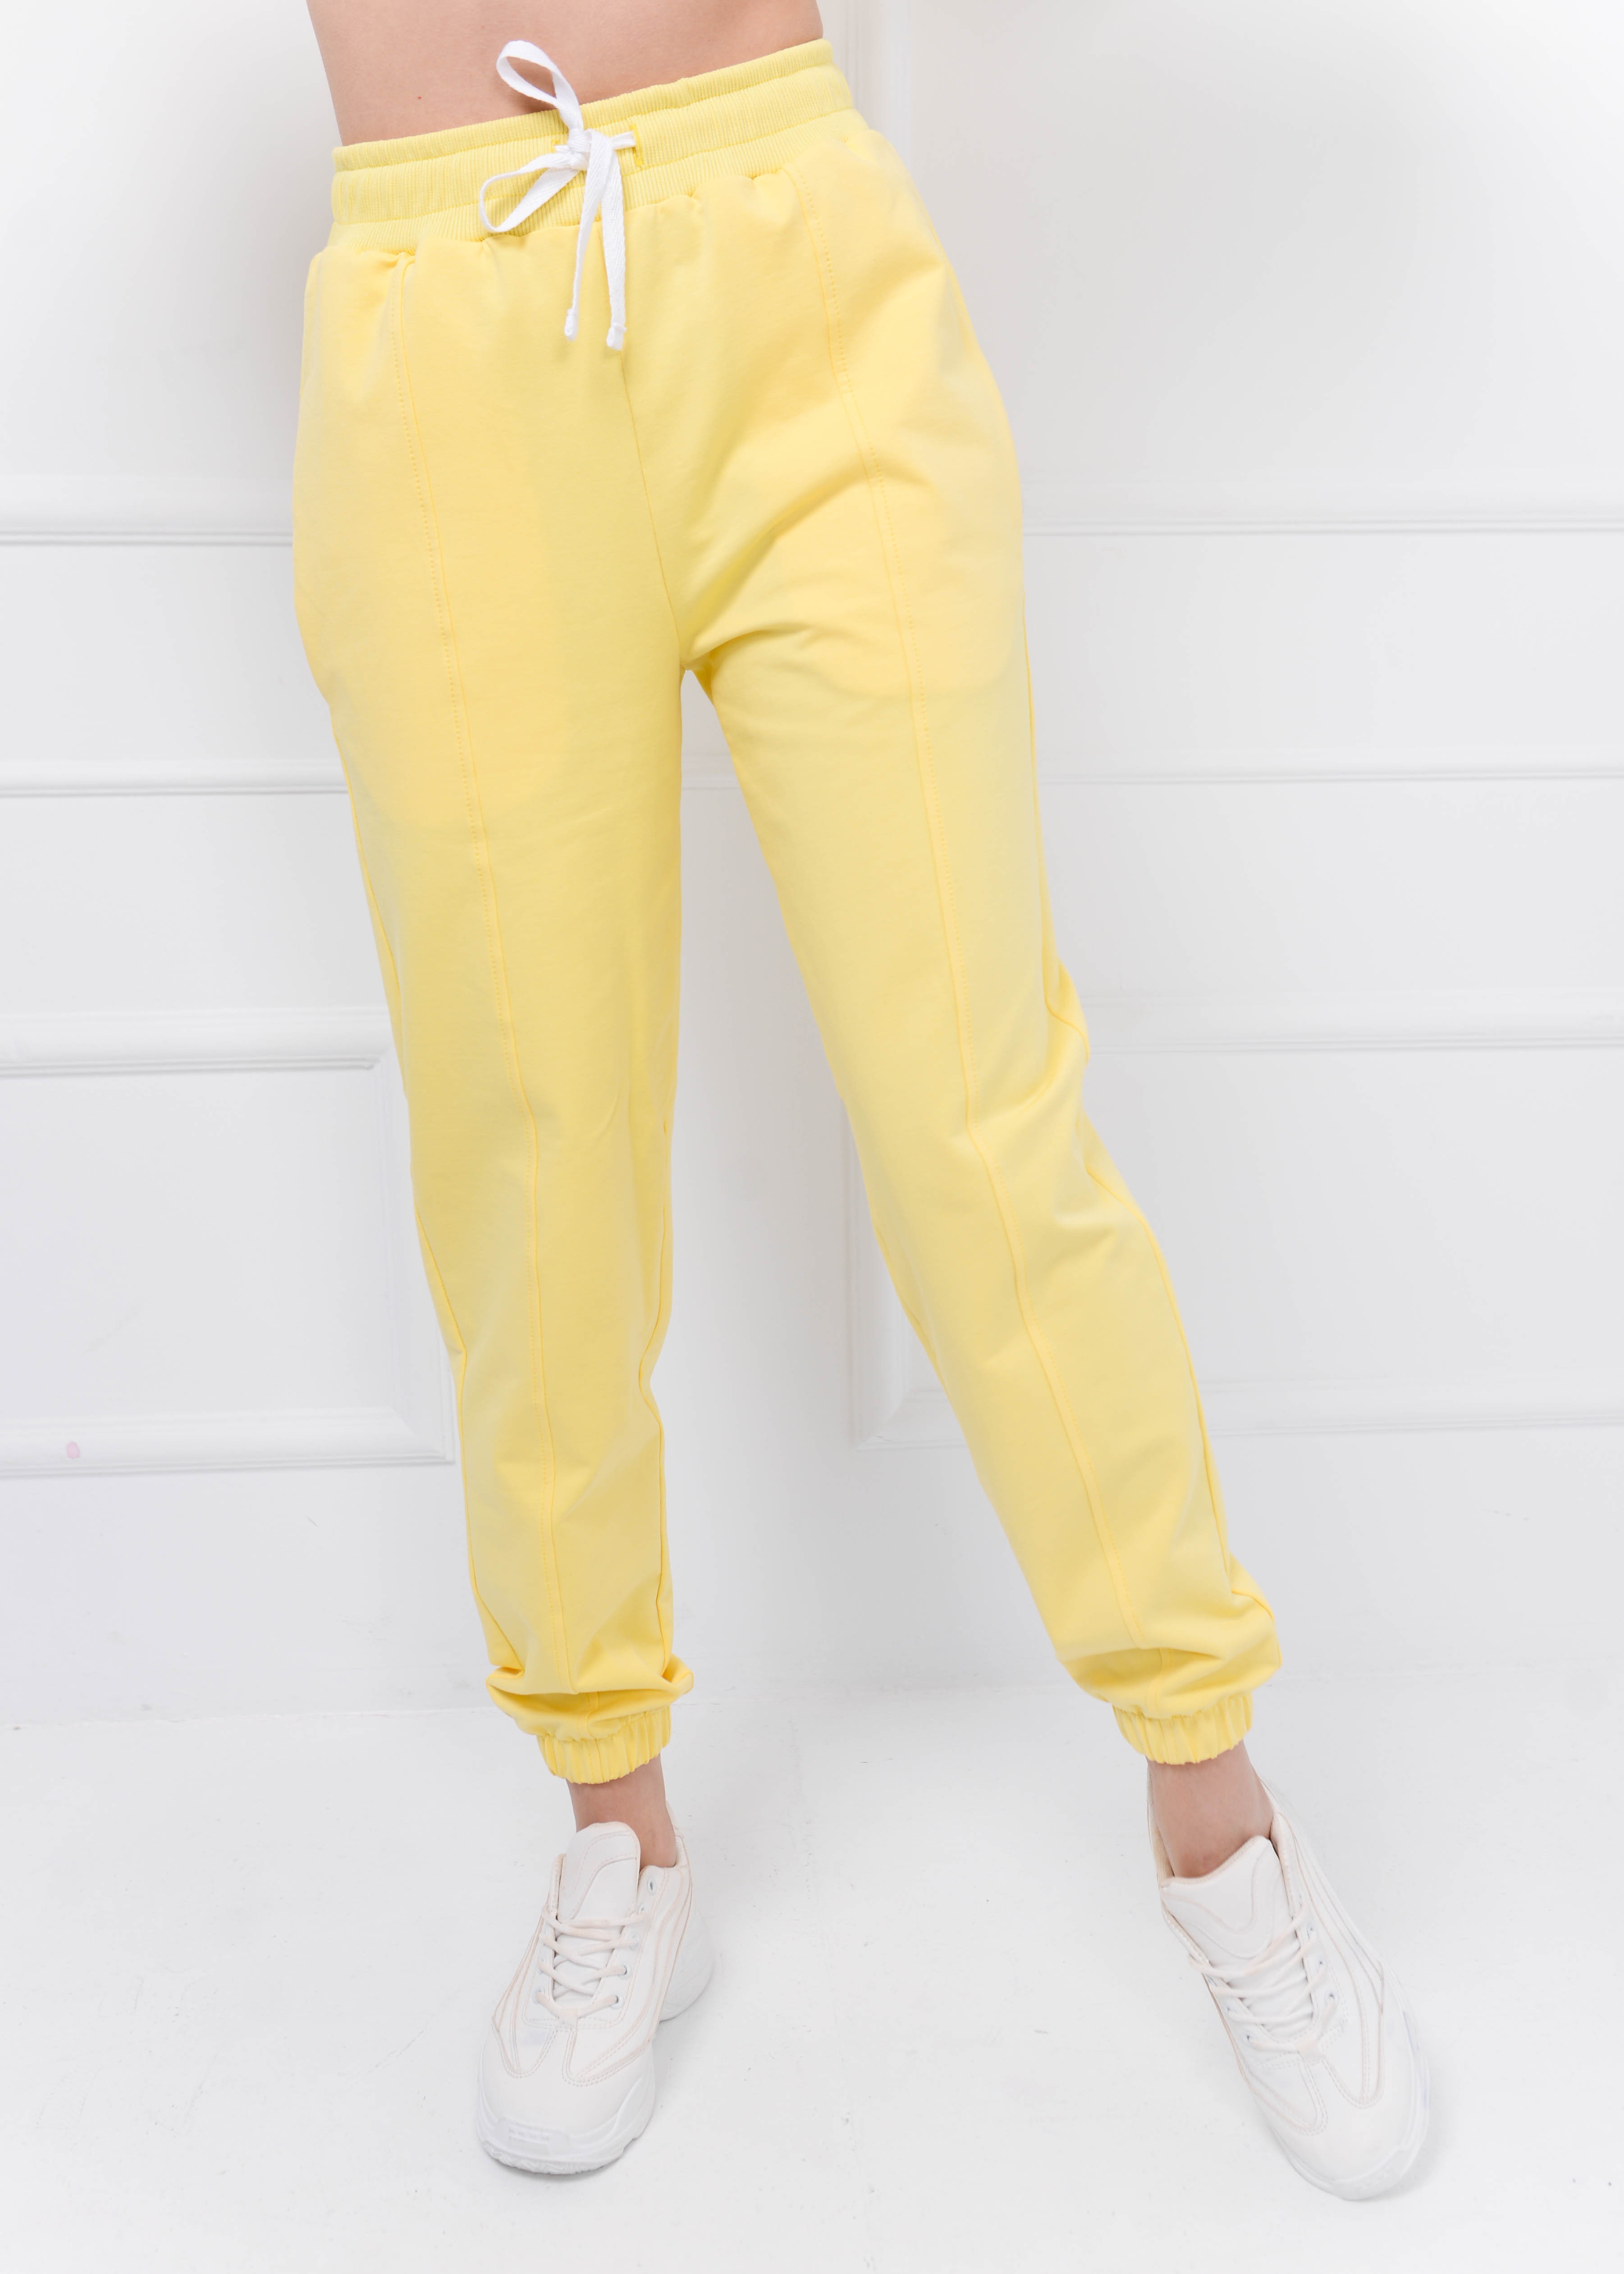 Женский спортивный костюм лимонный 02592 в интернет-магазине